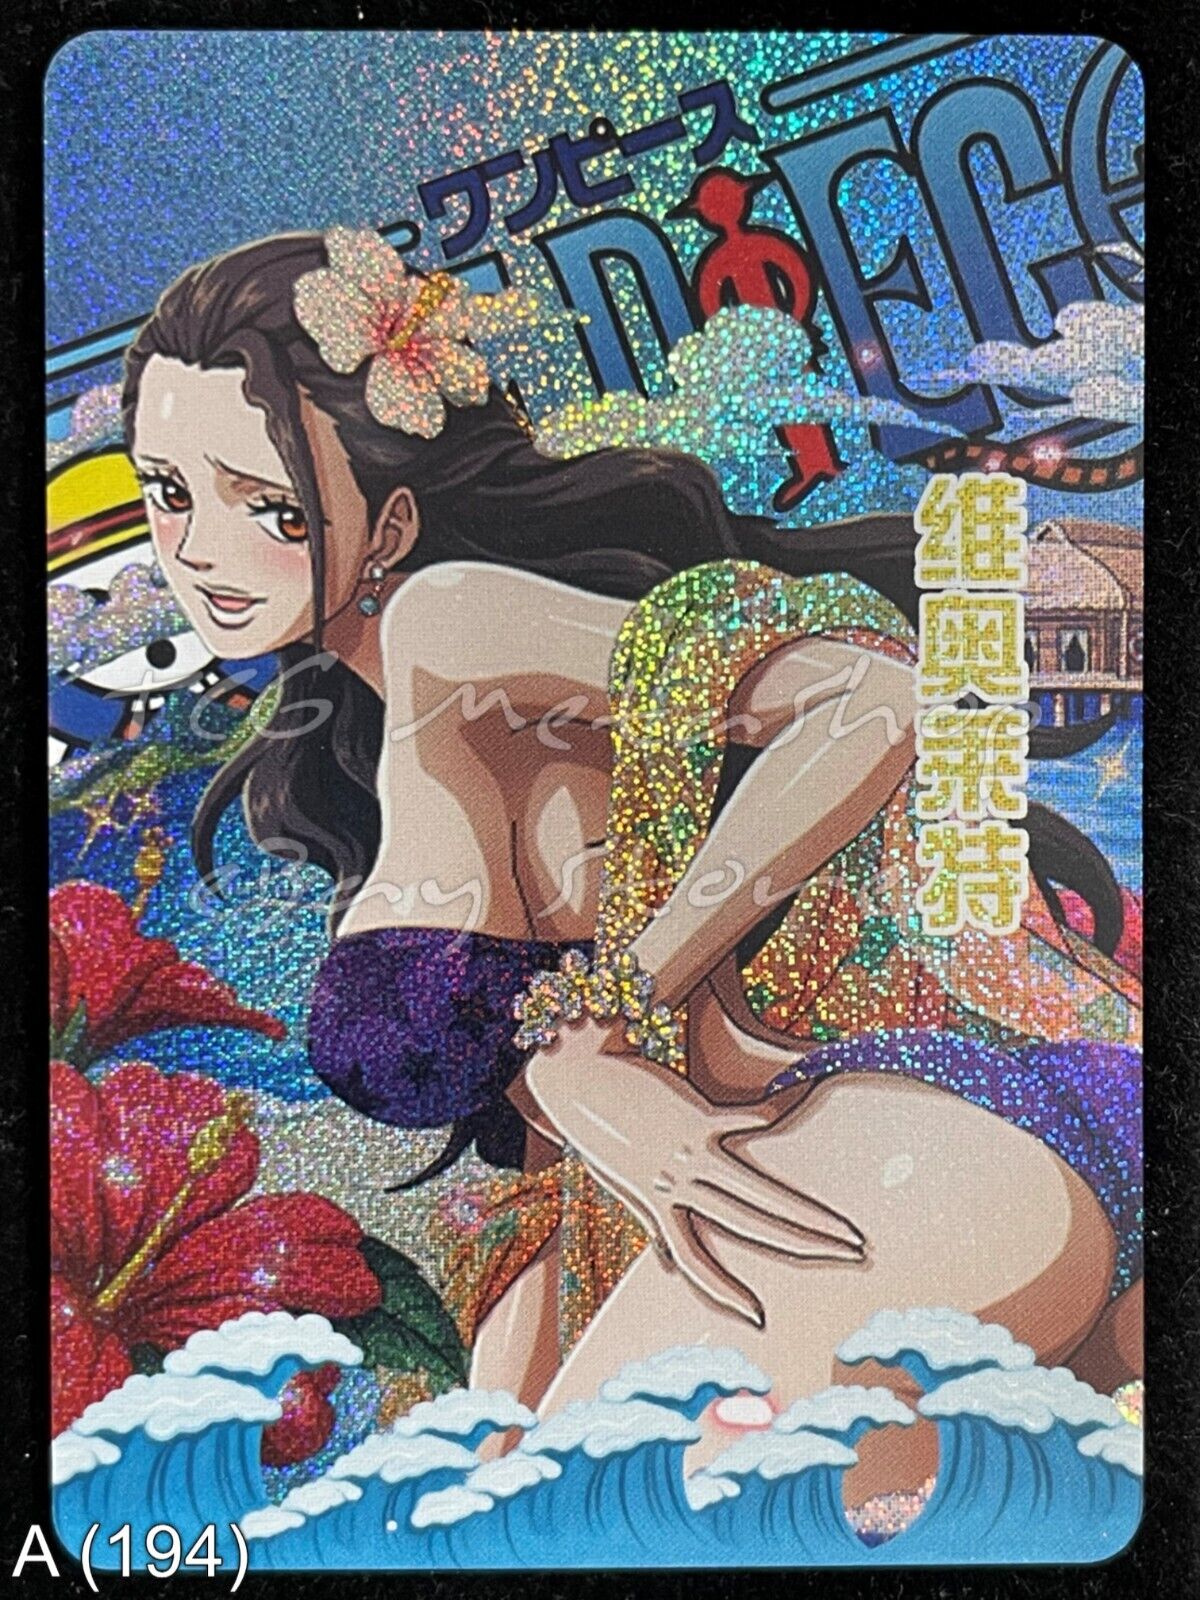 🔥 A 194 Viola One Piece Goddess Story Anime Waifu Card ACG 🔥